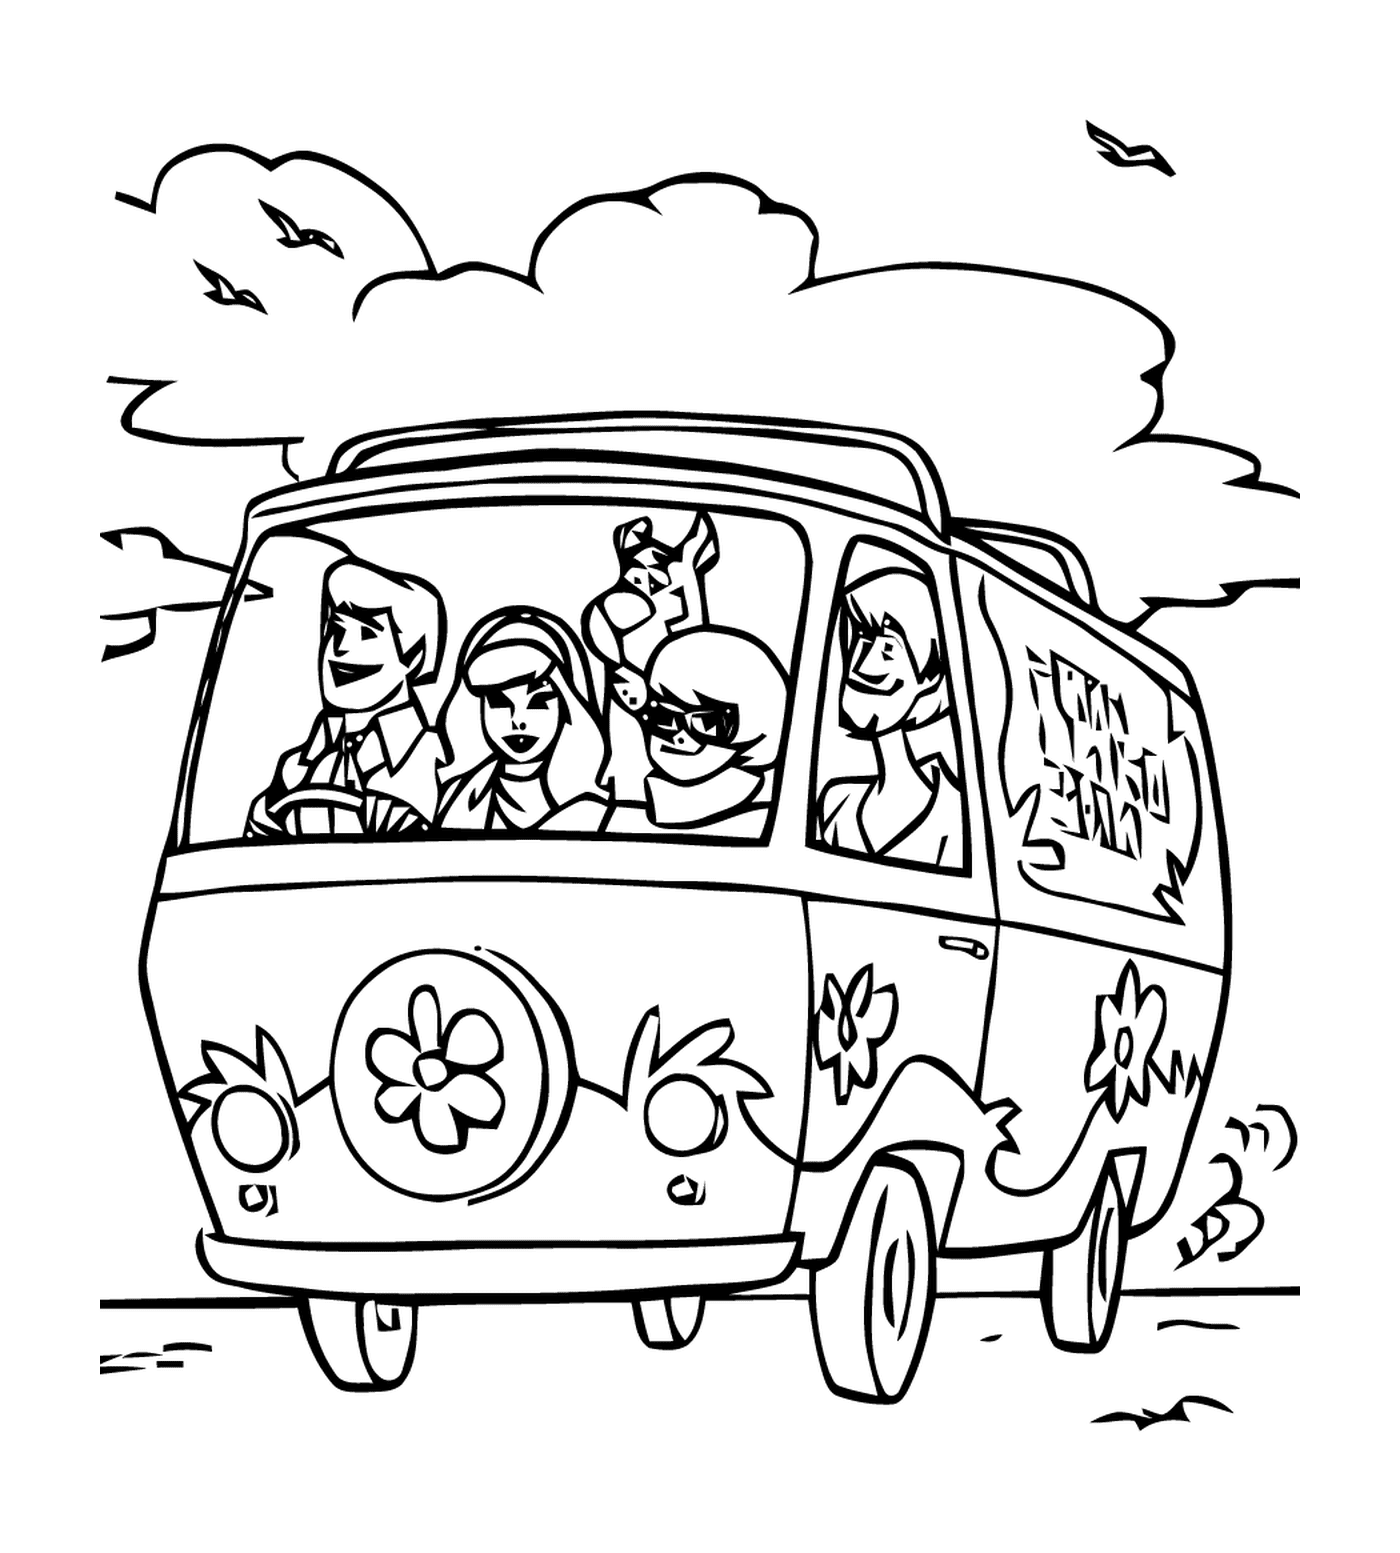  一群人坐在路上的一辆车里 